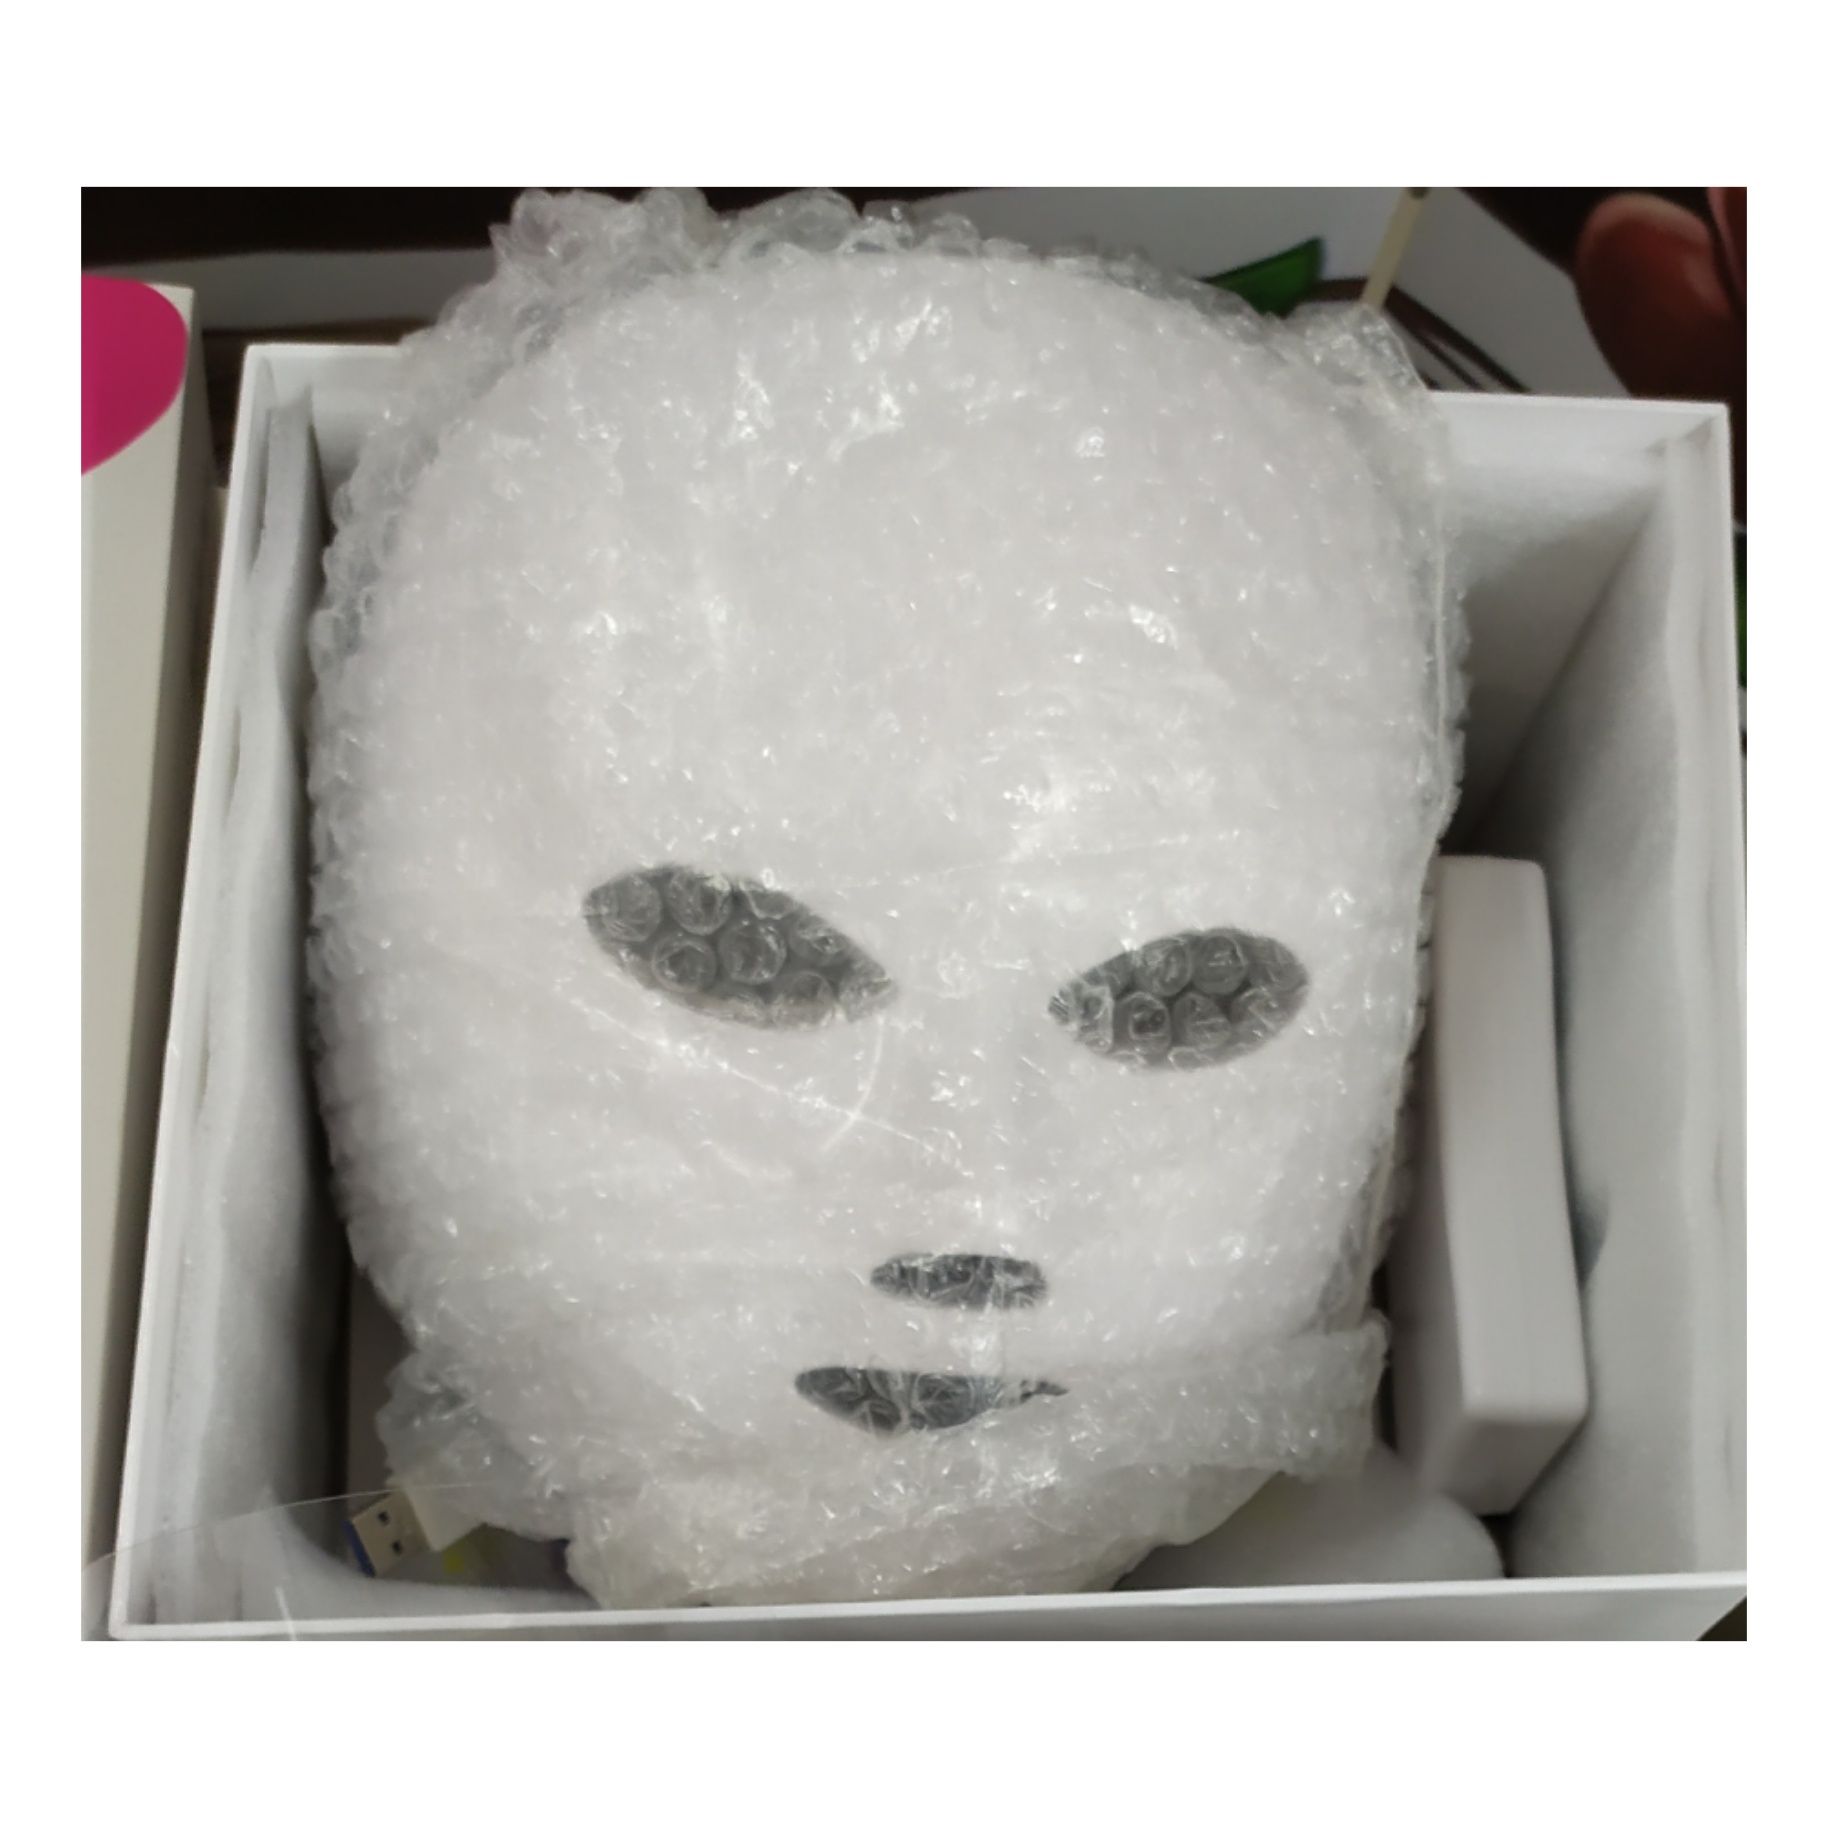 Máscara Led Fototerapia Limpeza de Pele Facial